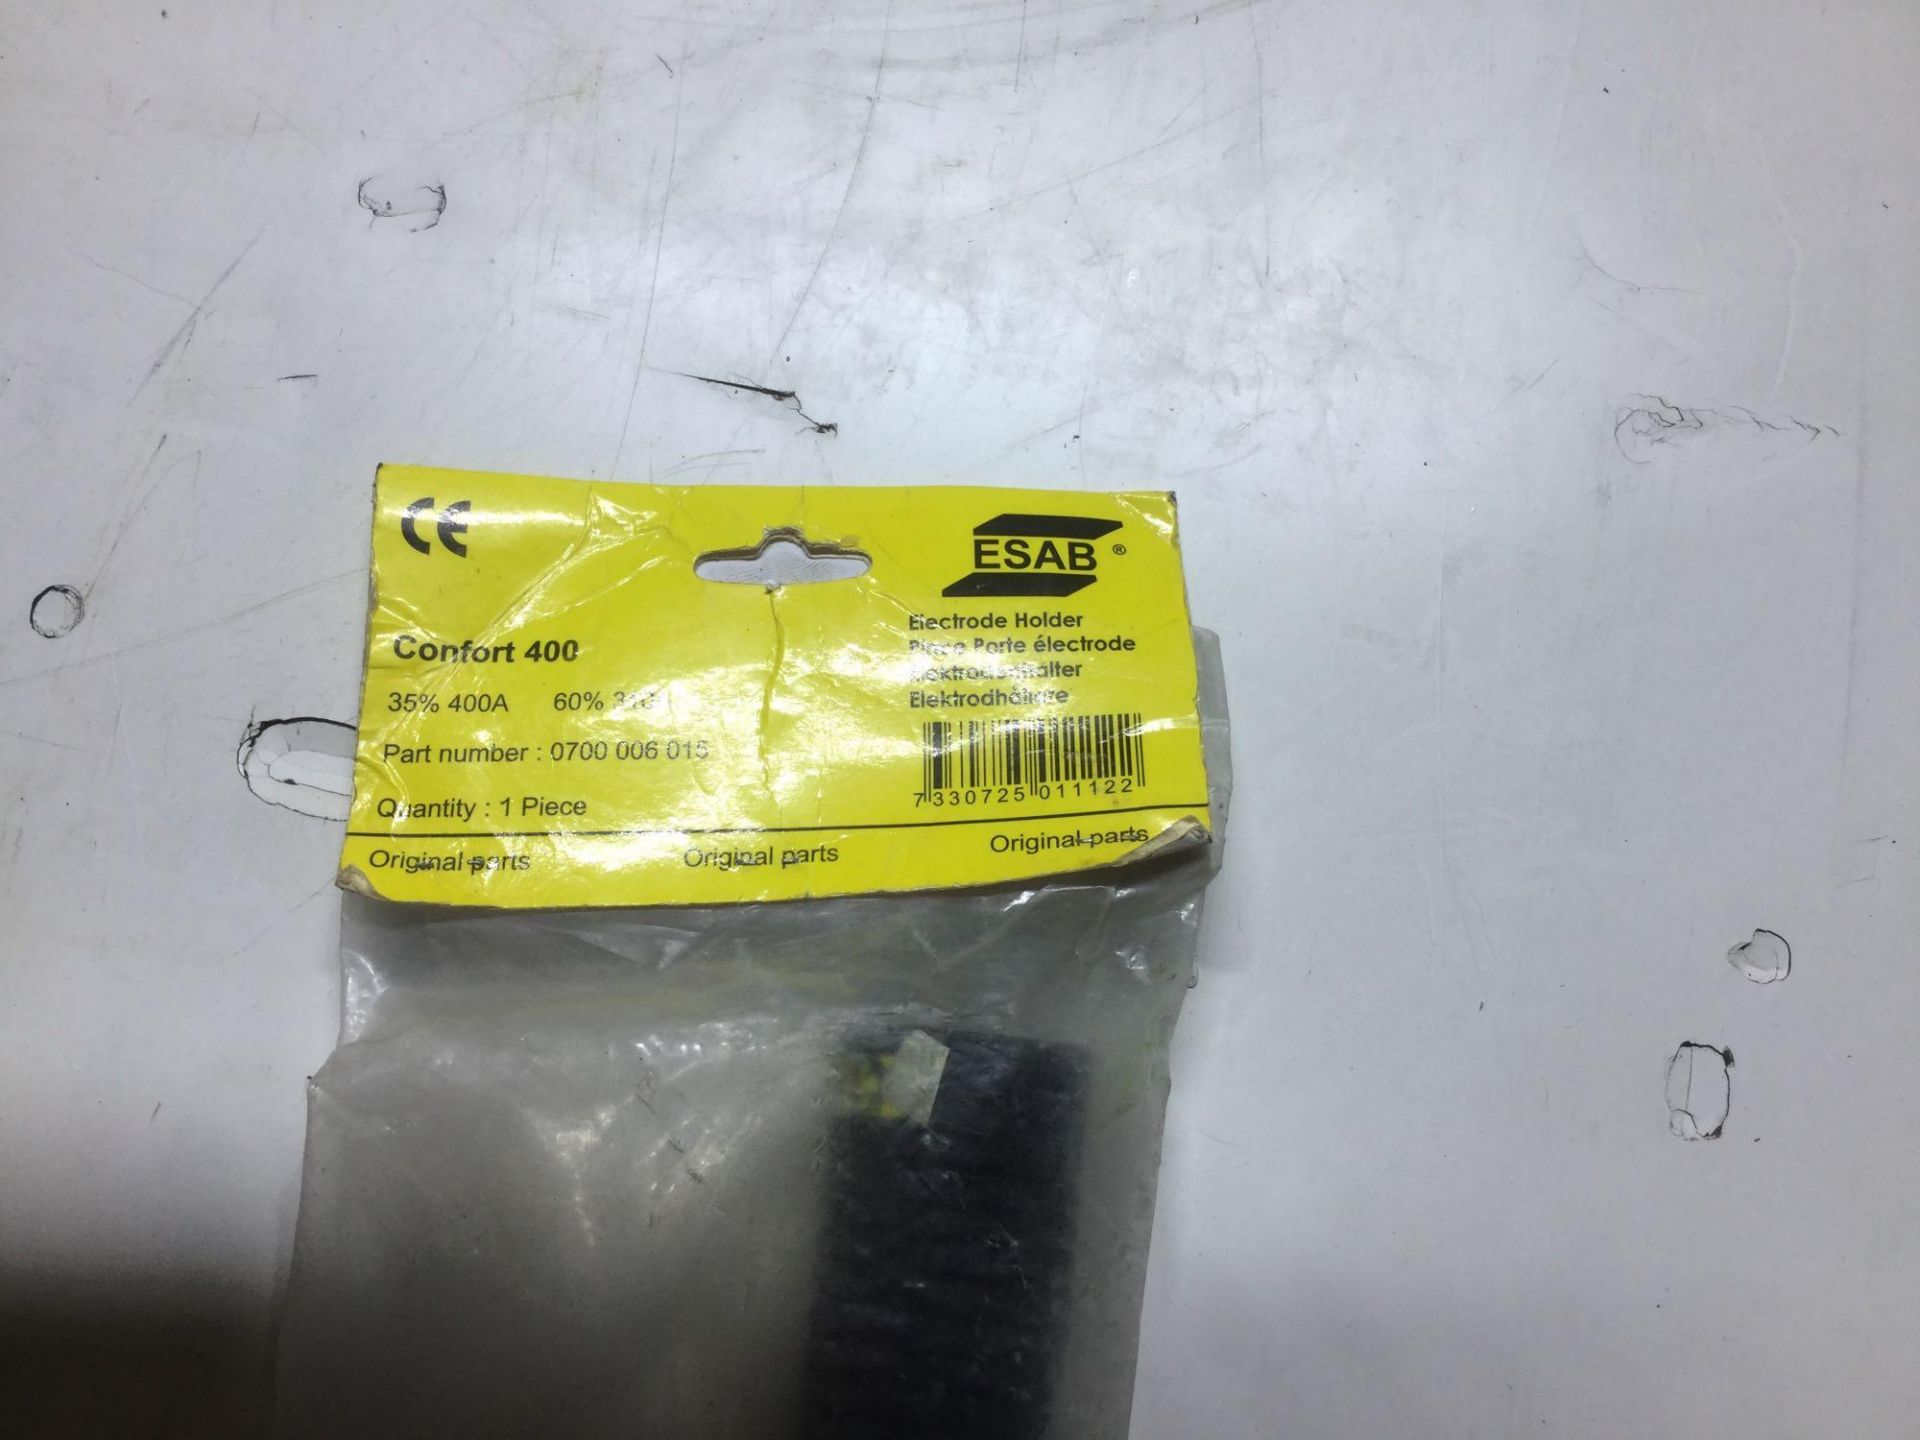 Esab electrode holder confort 400 - Image 2 of 2